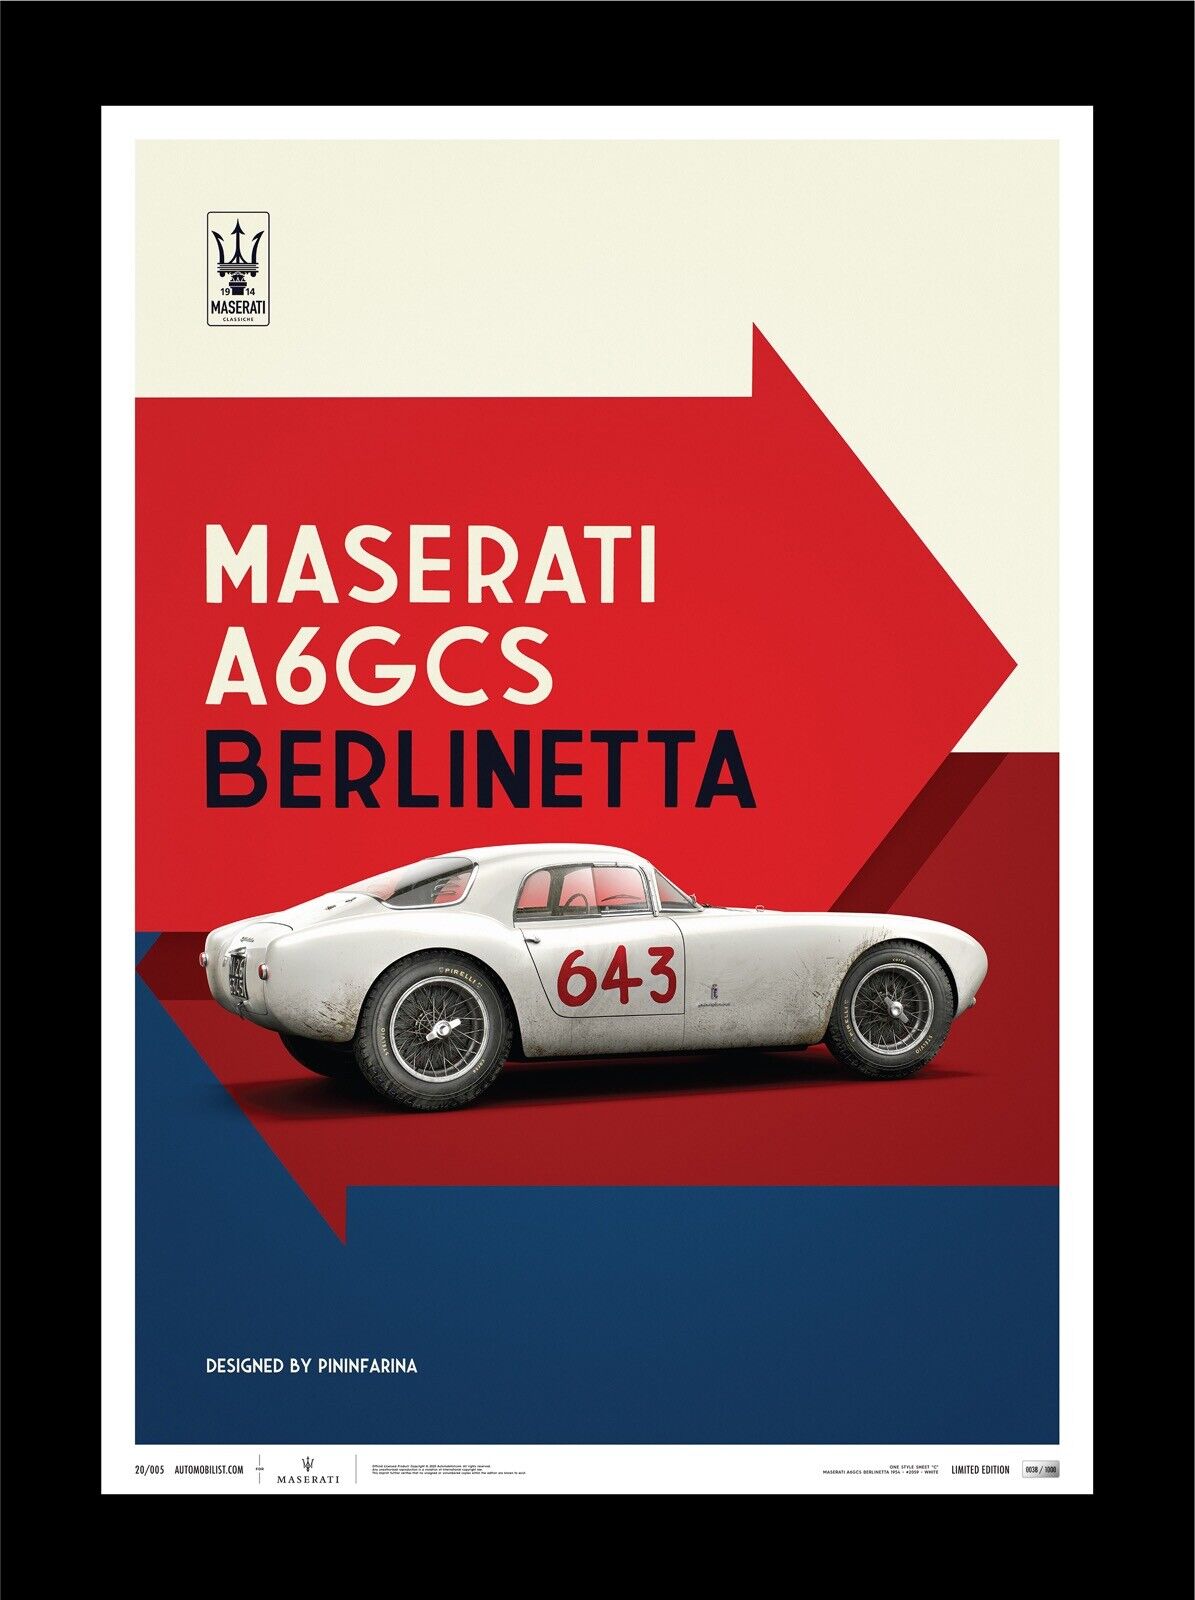 1954 Maserati A6GCS White Berlinetta Art Print Poster Ltd Ed 1000